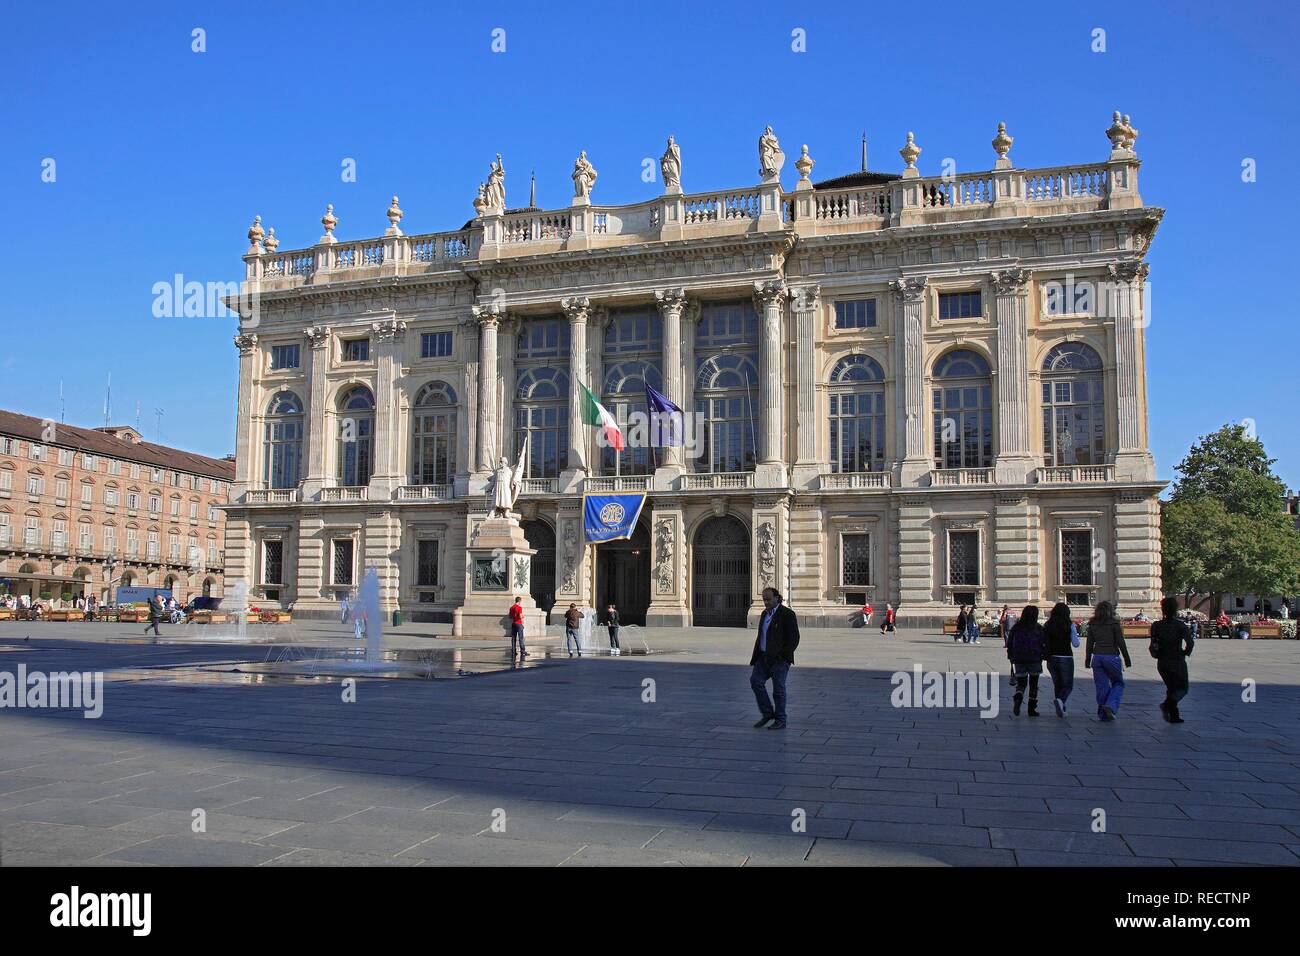 La facciata barocca del Palazzo Madama in piazza Castello, Torino, Torino, Piemonte, Italia, Europa Foto Stock